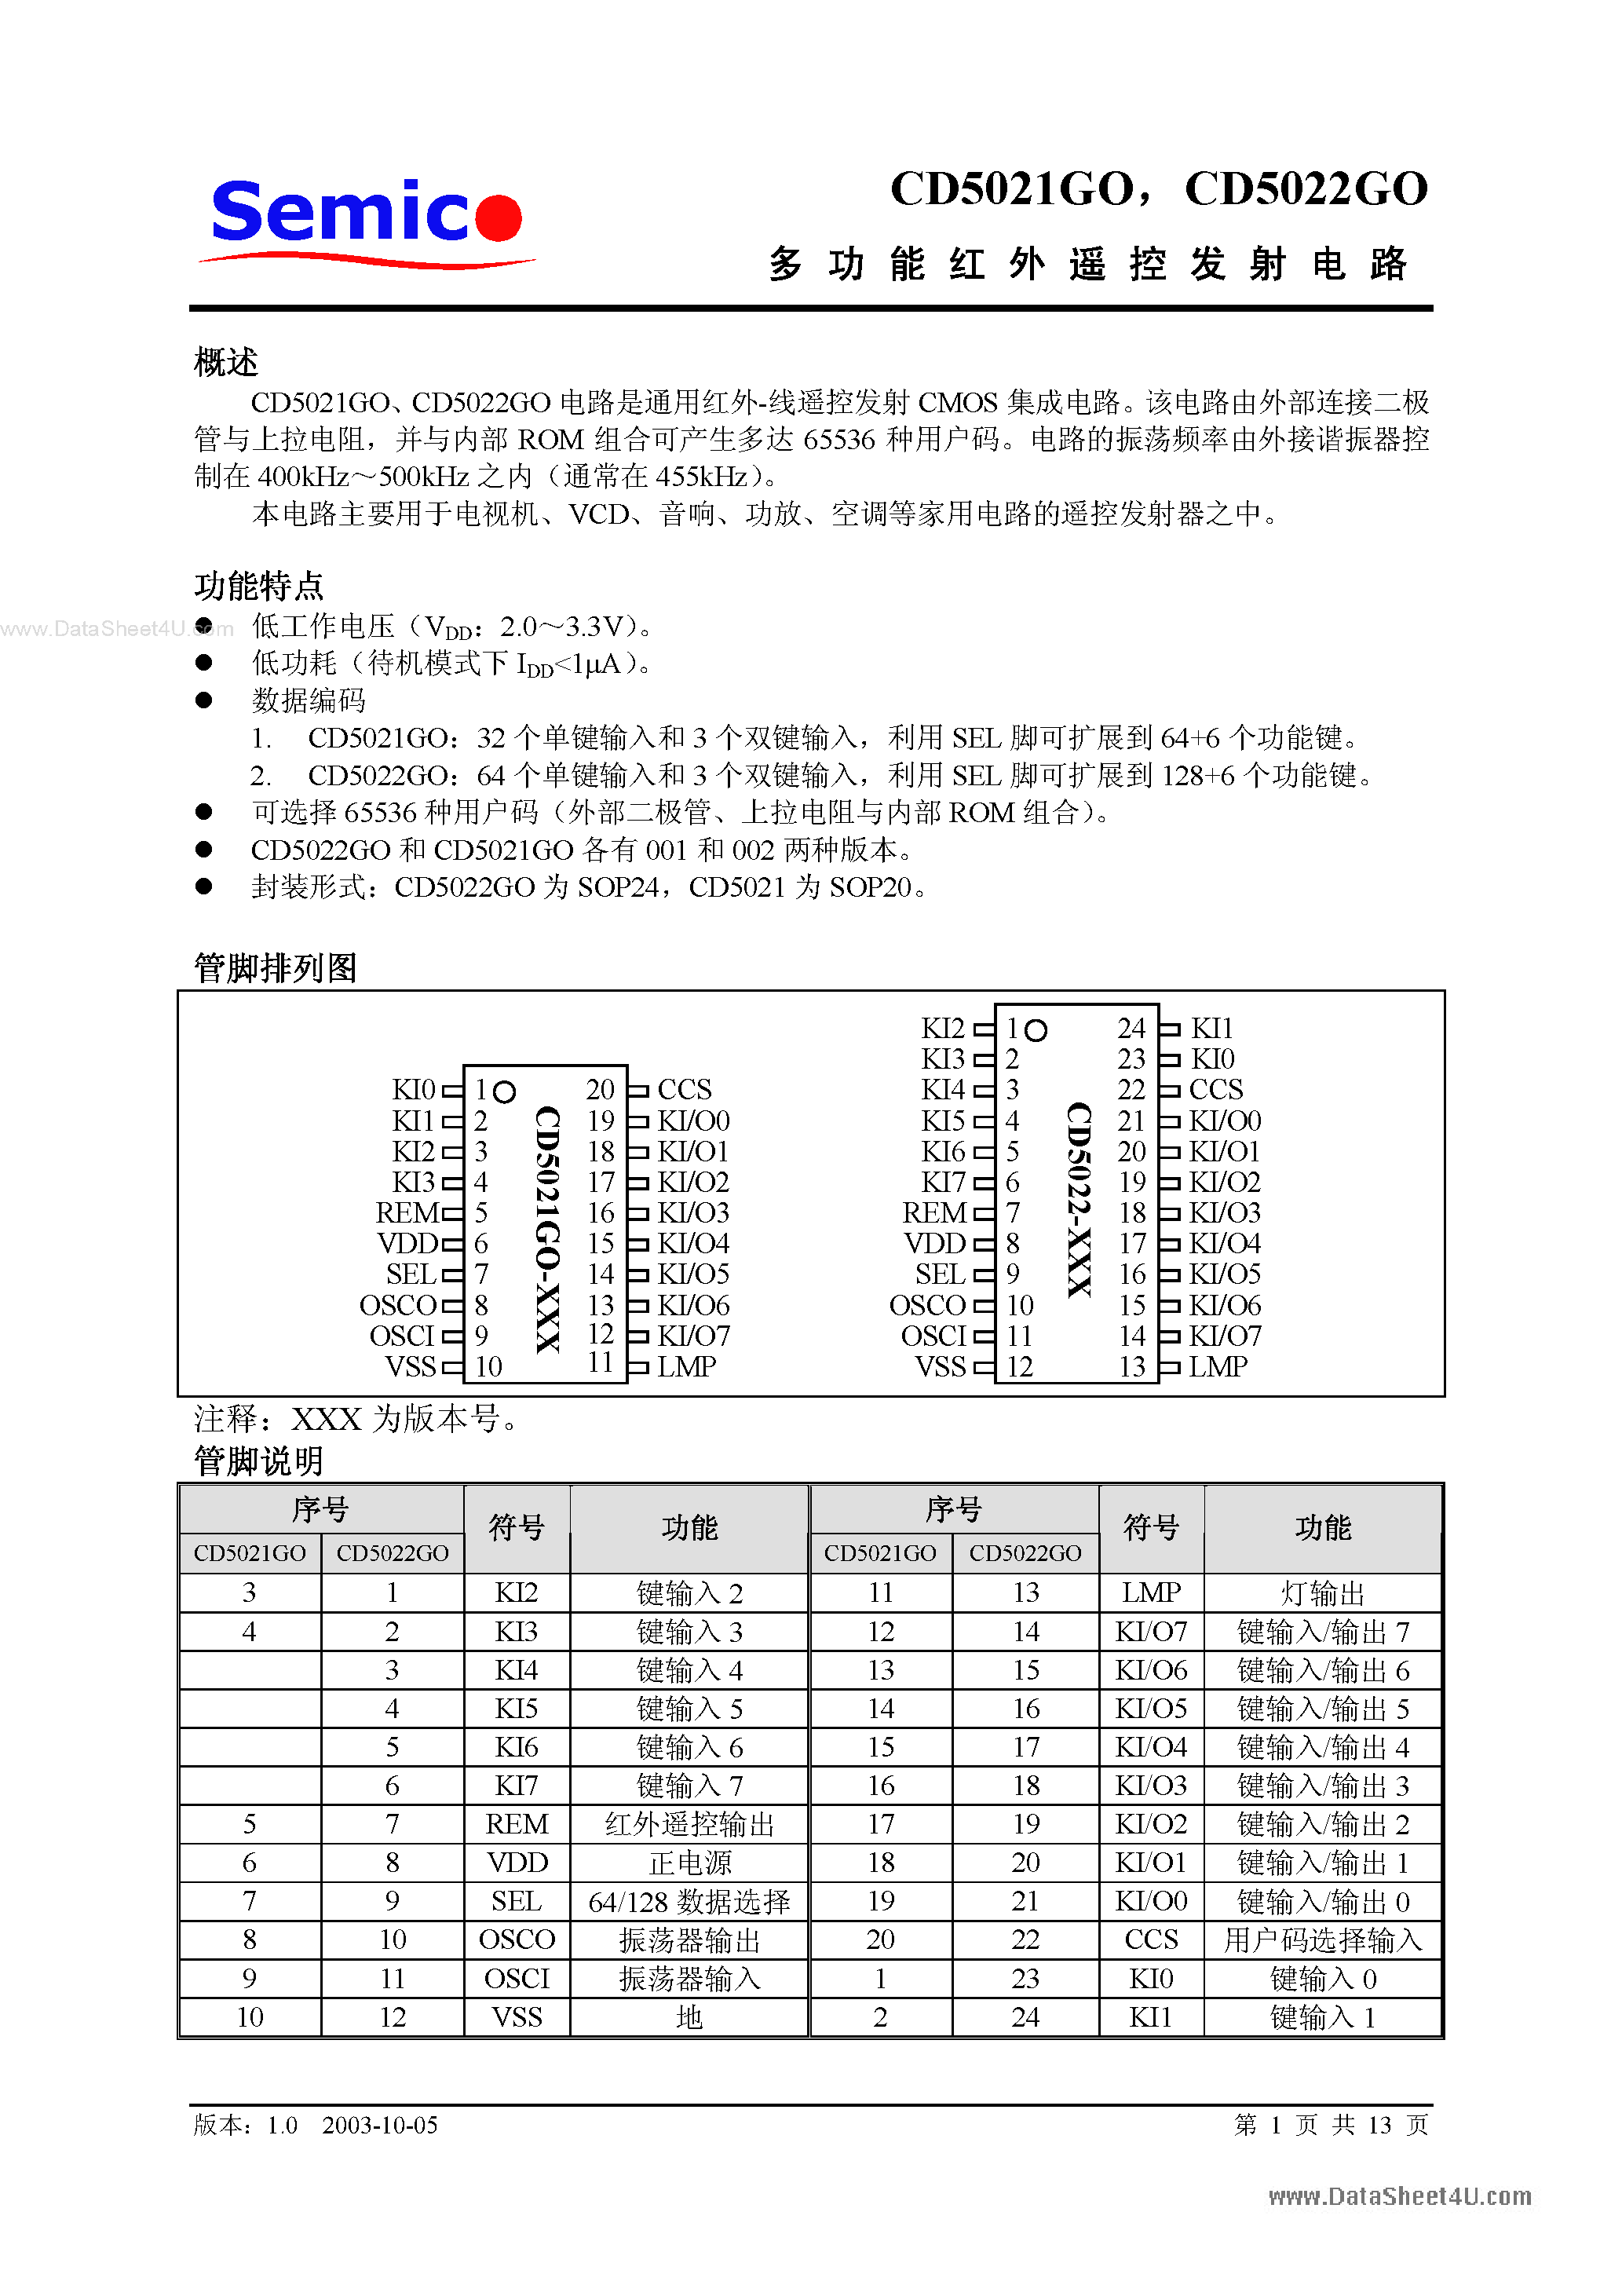 Datasheet CD5021GO - (CD5021GO / CD5022GO) CMOS page 1